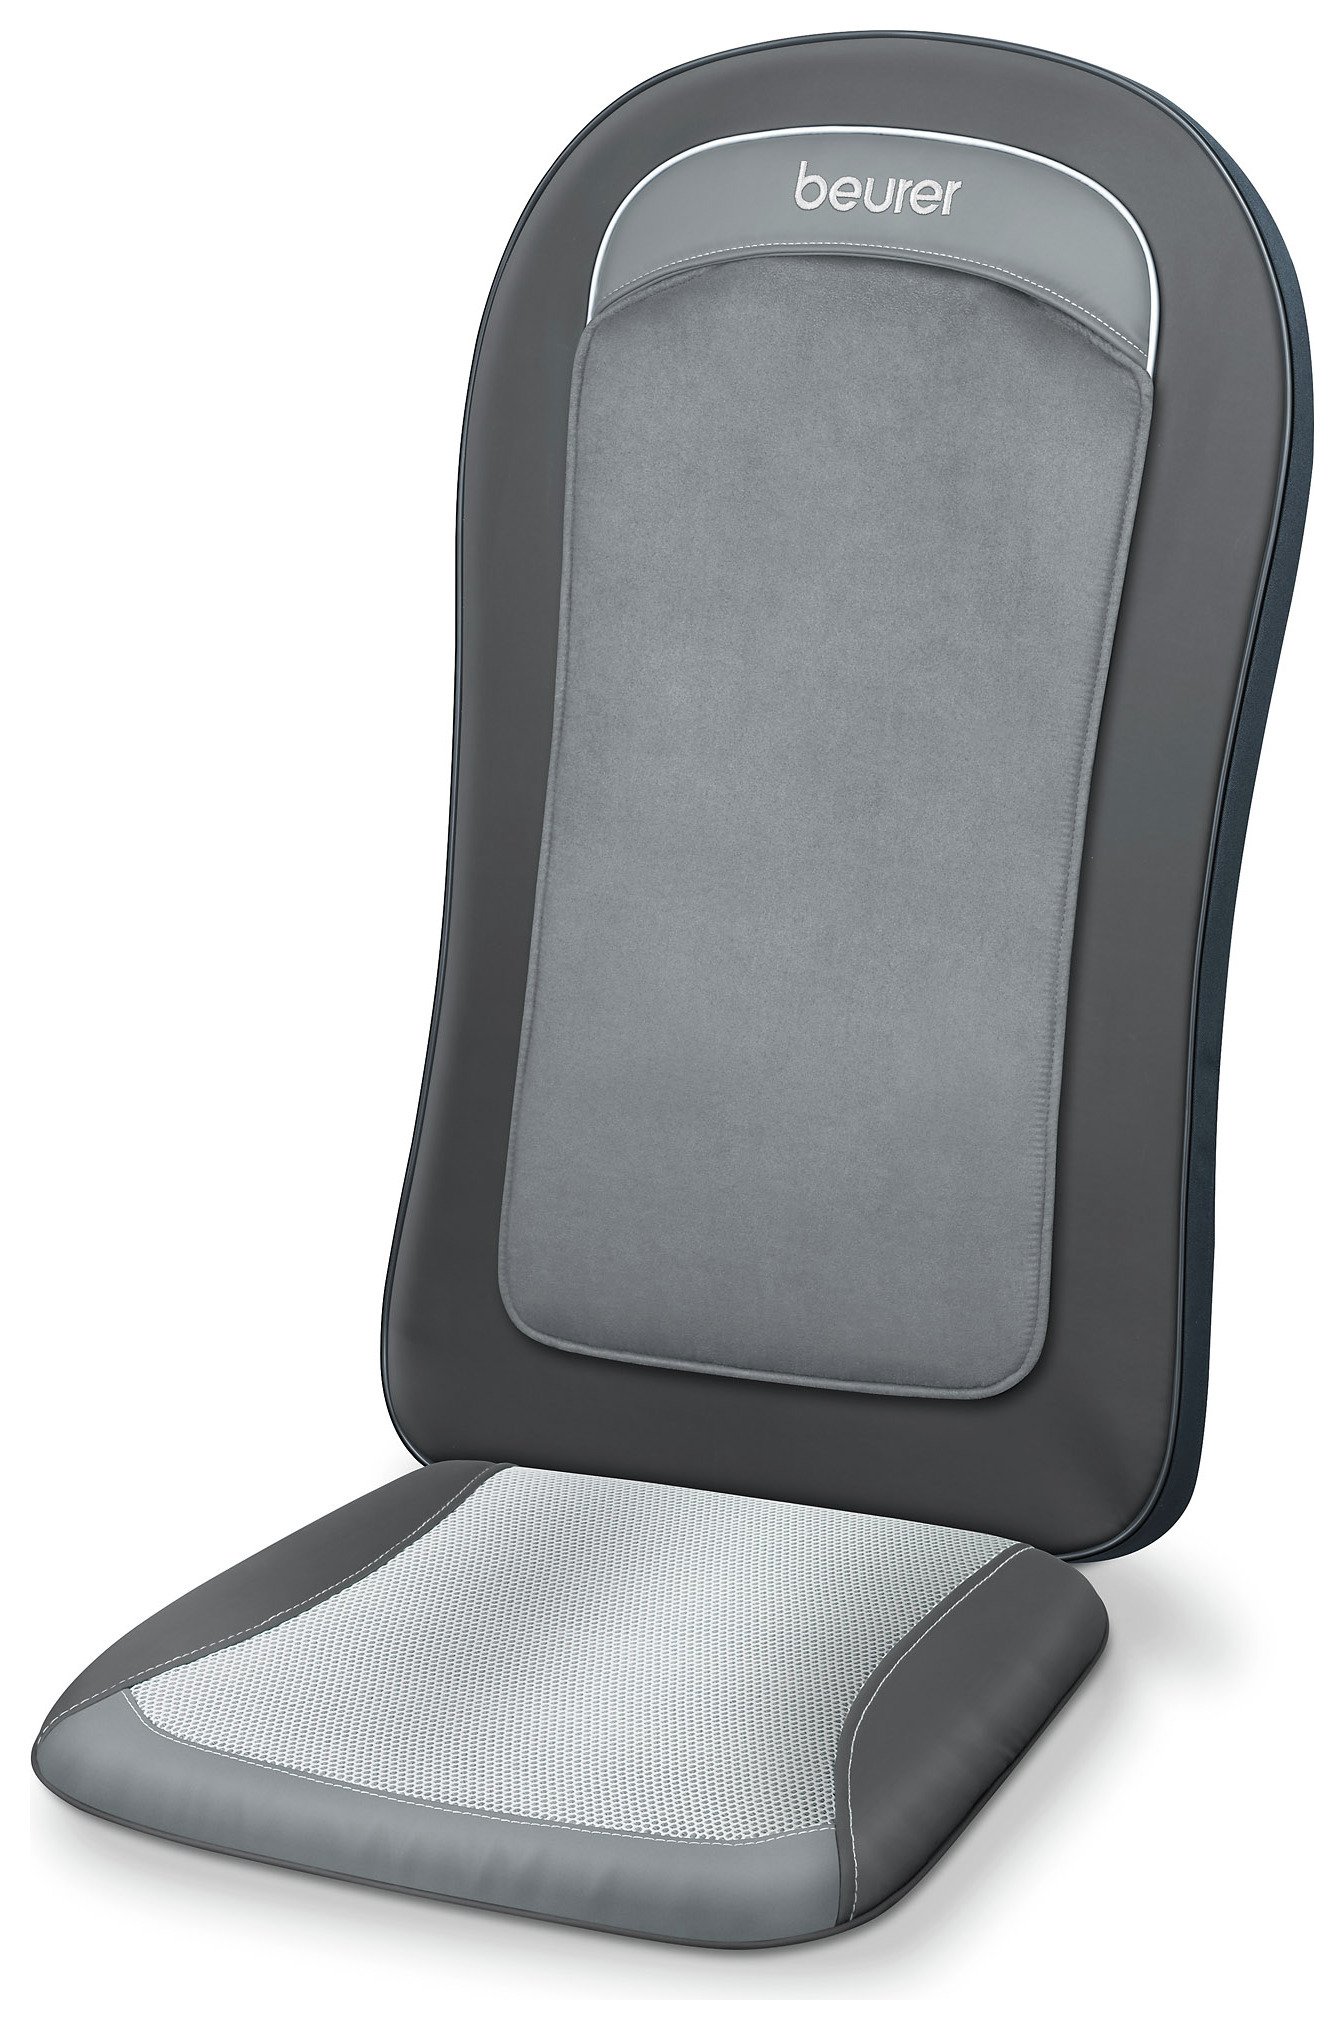 Beurer Mg206 Shiatsu Massage Slim Seat Cover Reviews